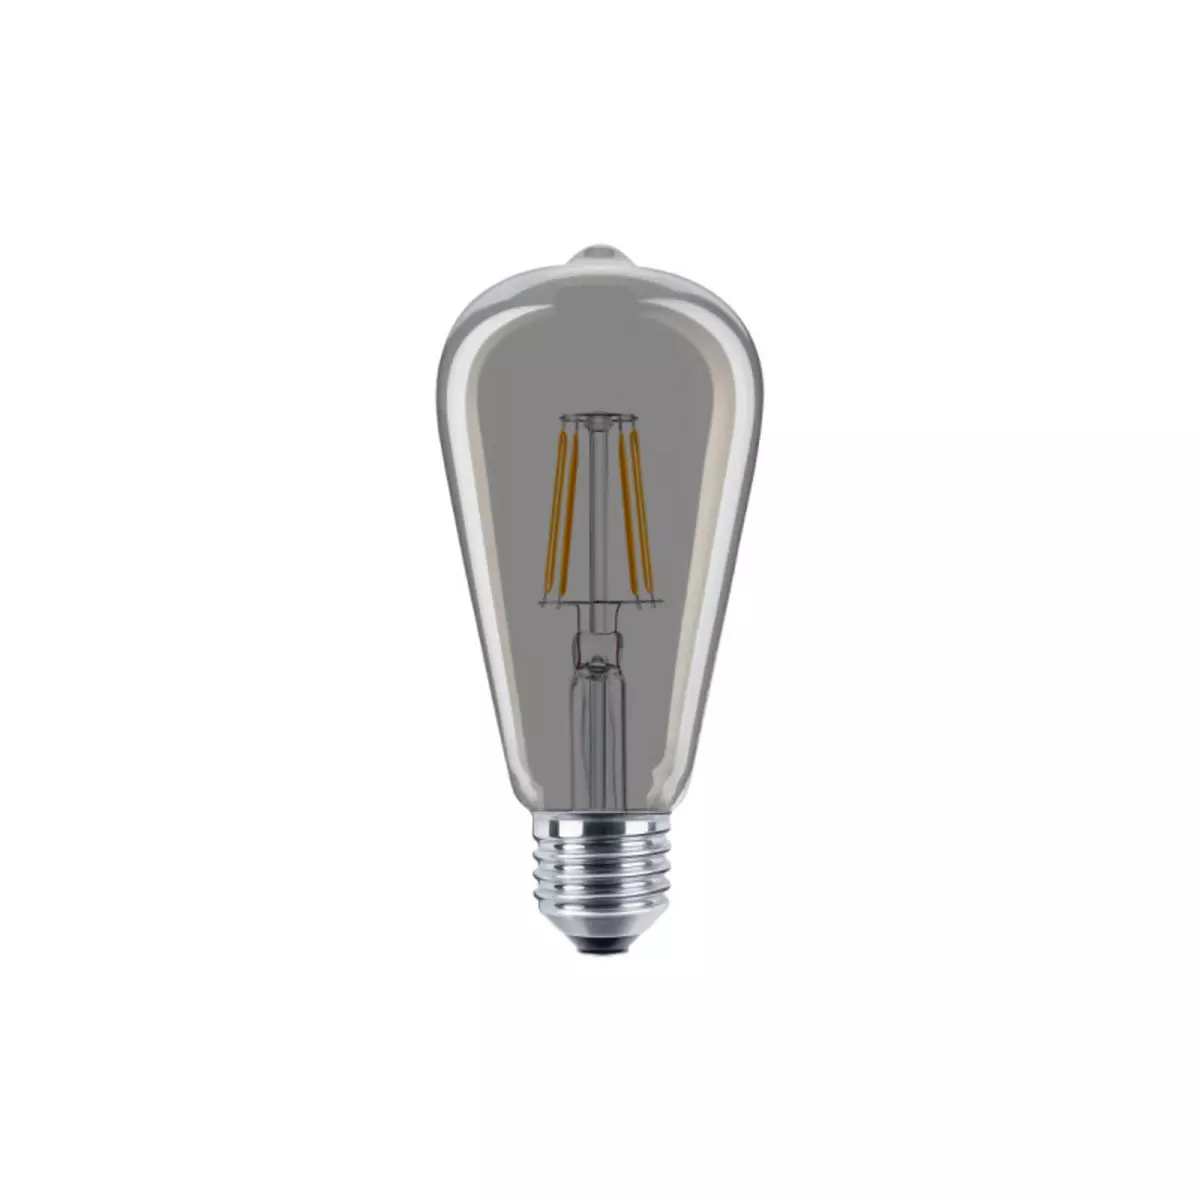  Ampoule LED poire fumée XXCELL - 7 W - 600 lumens - 2700 K - E27